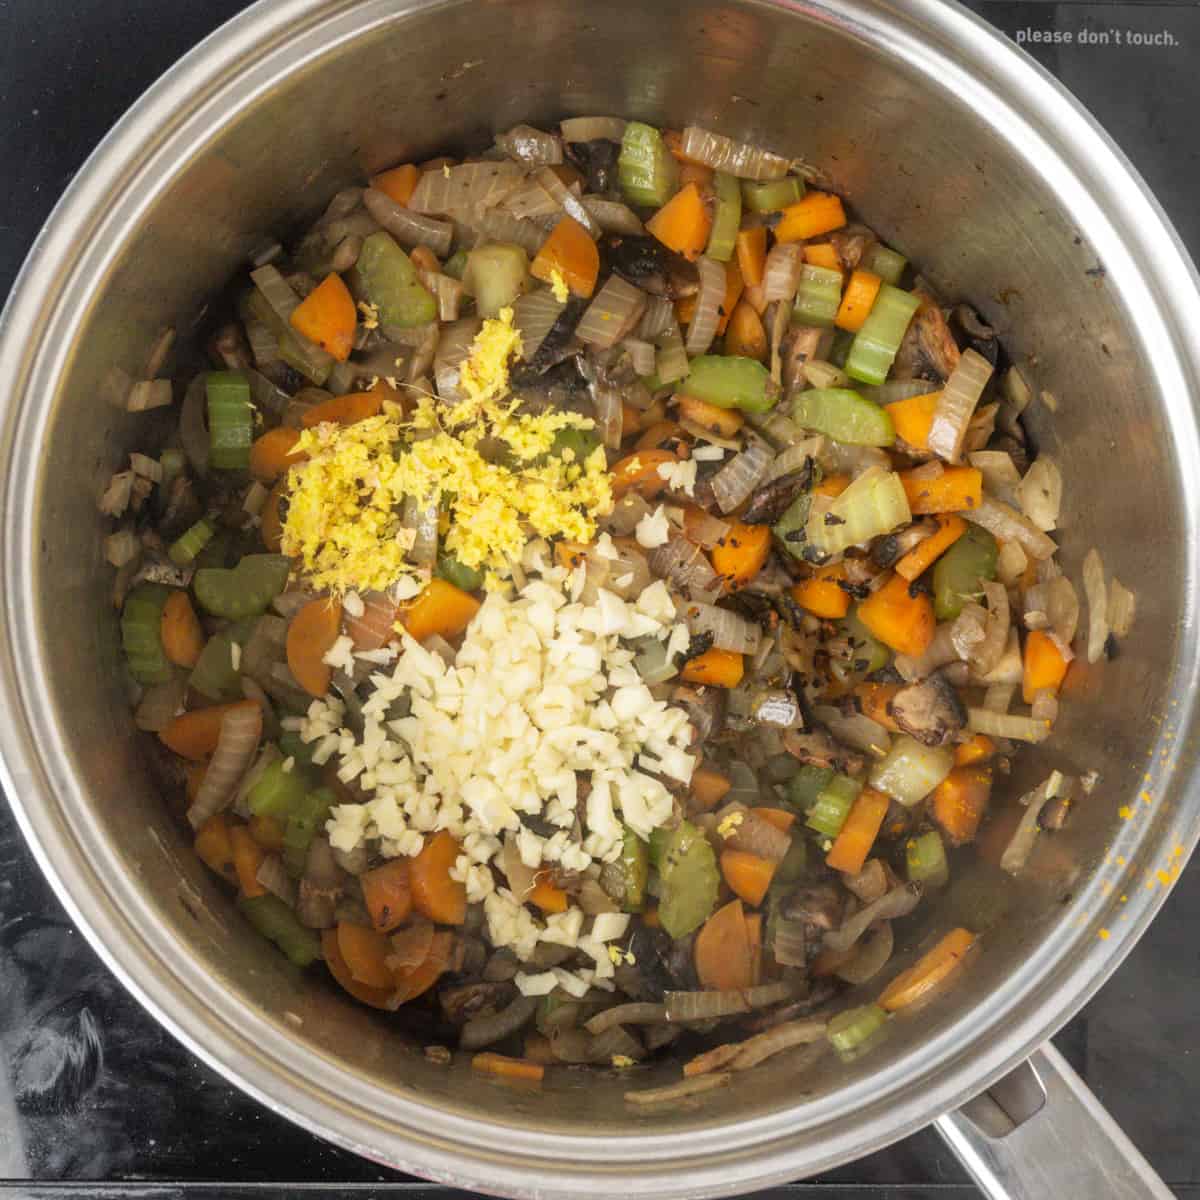 Σοταρισμένα λαχανικά σε ένα τηγάνι με σκόρδο και τζίντζερ από πάνω.